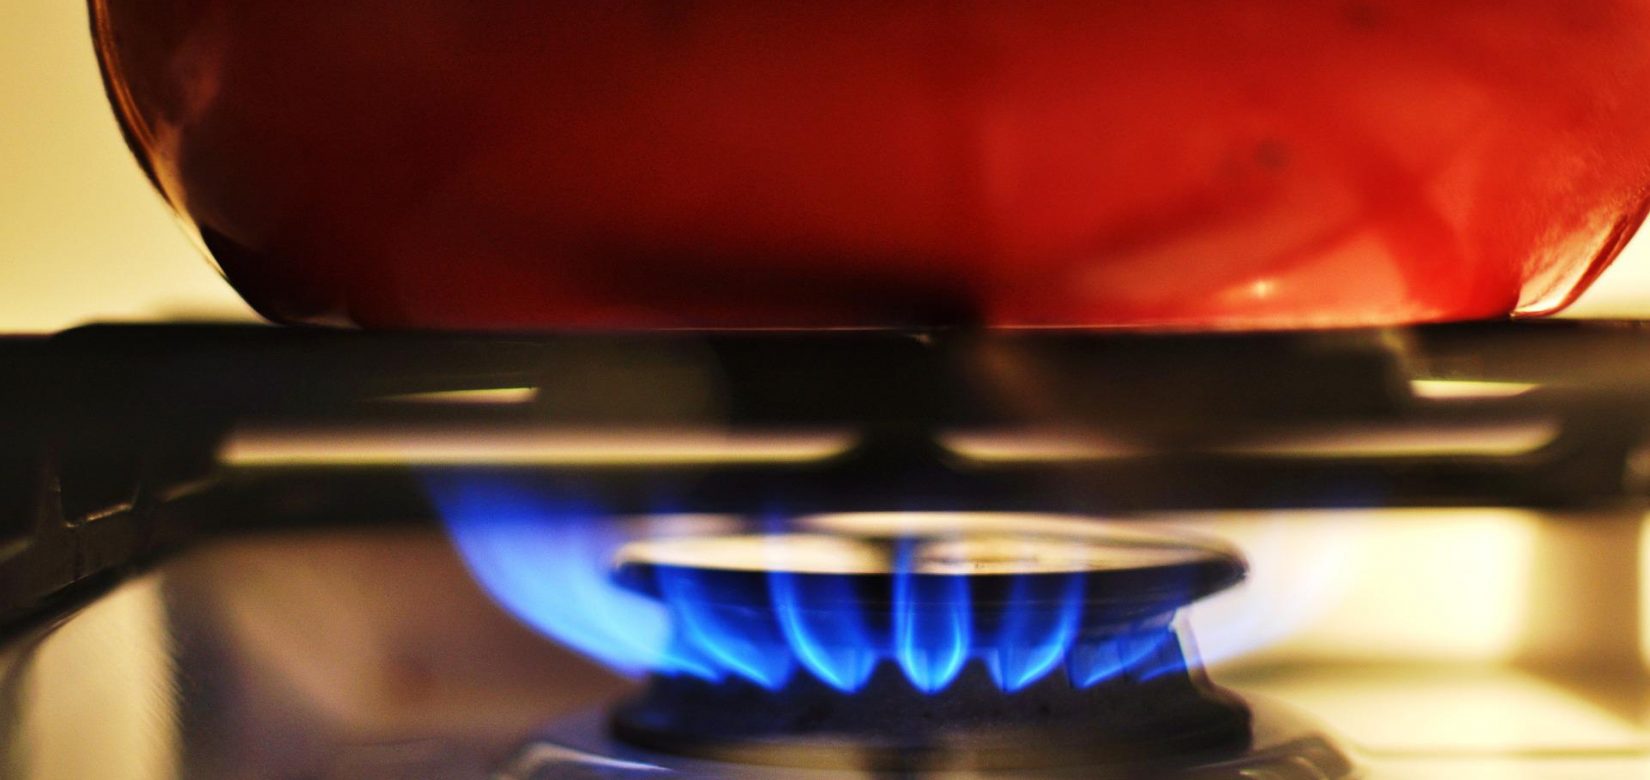 ΕΔΑ Αττικής για την πυρκαγιά στην Πεντέλη: Υπήρξε διαρροή φυσικού αερίου - Αποκαταστάθηκε η βλάβη